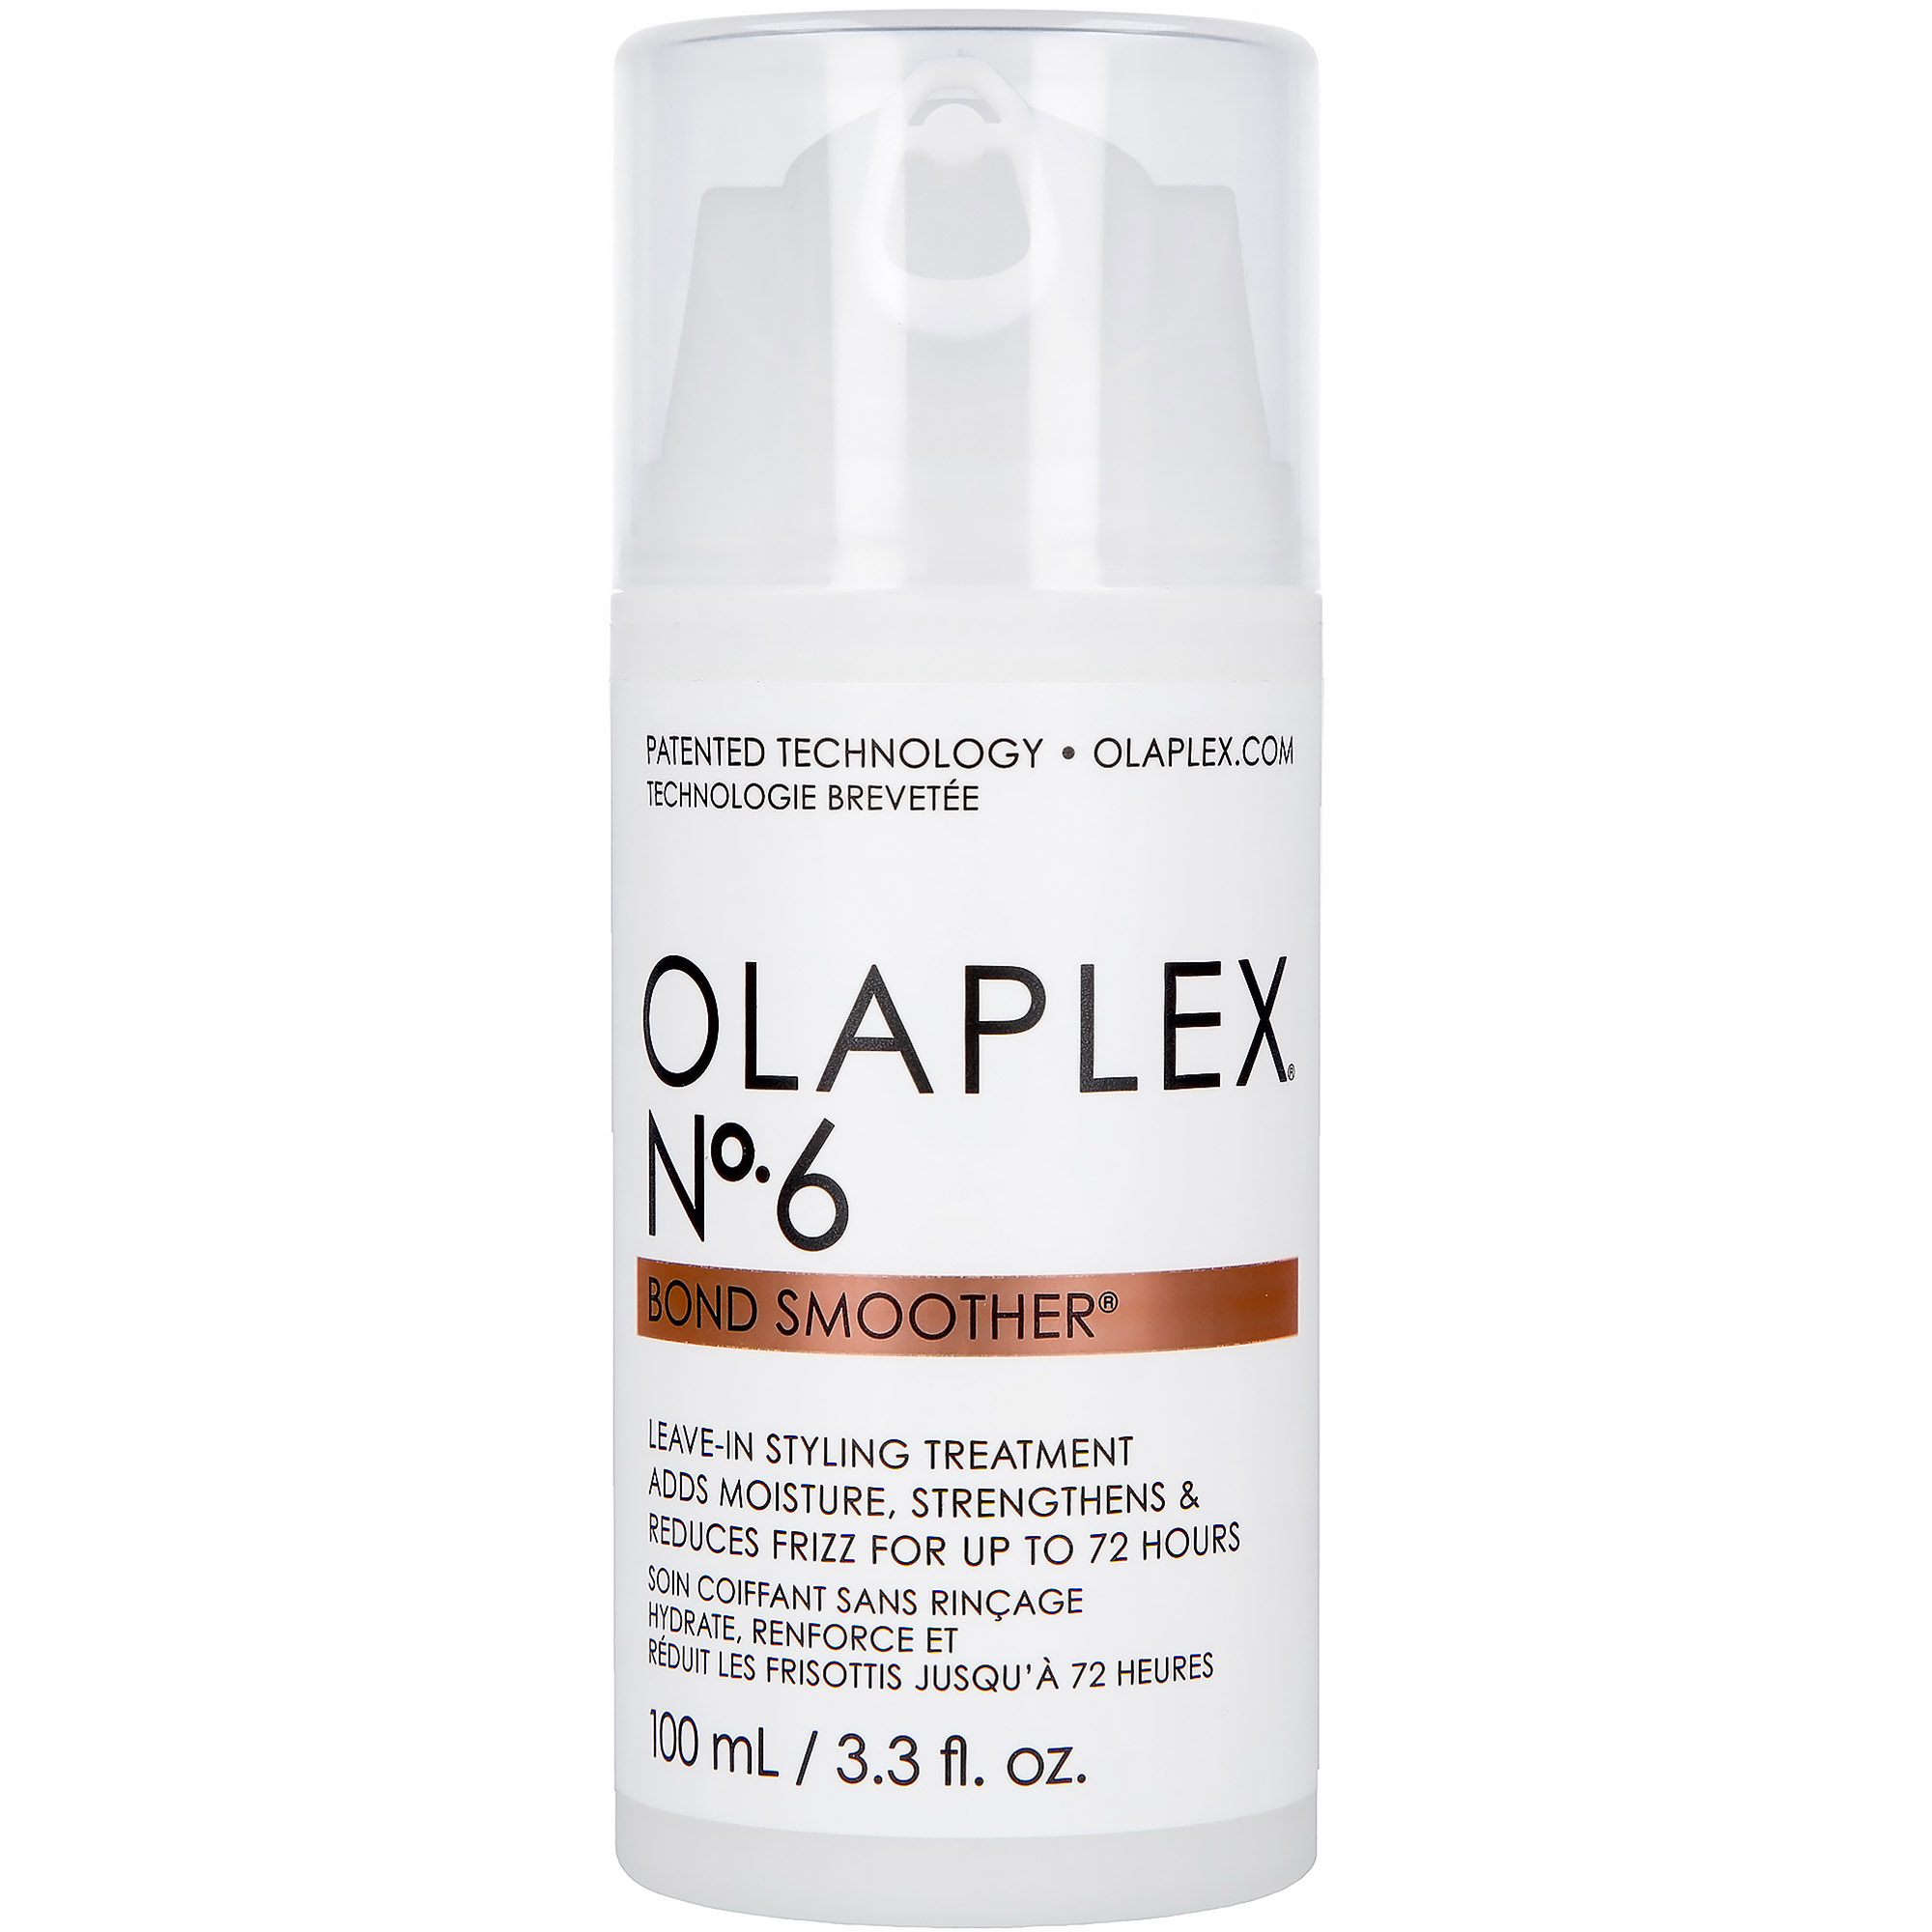 Несмываемый крем Olaplex Bond Smoother Reparative Styling Creme No.6 для укладки волос 100 мл - фото 2